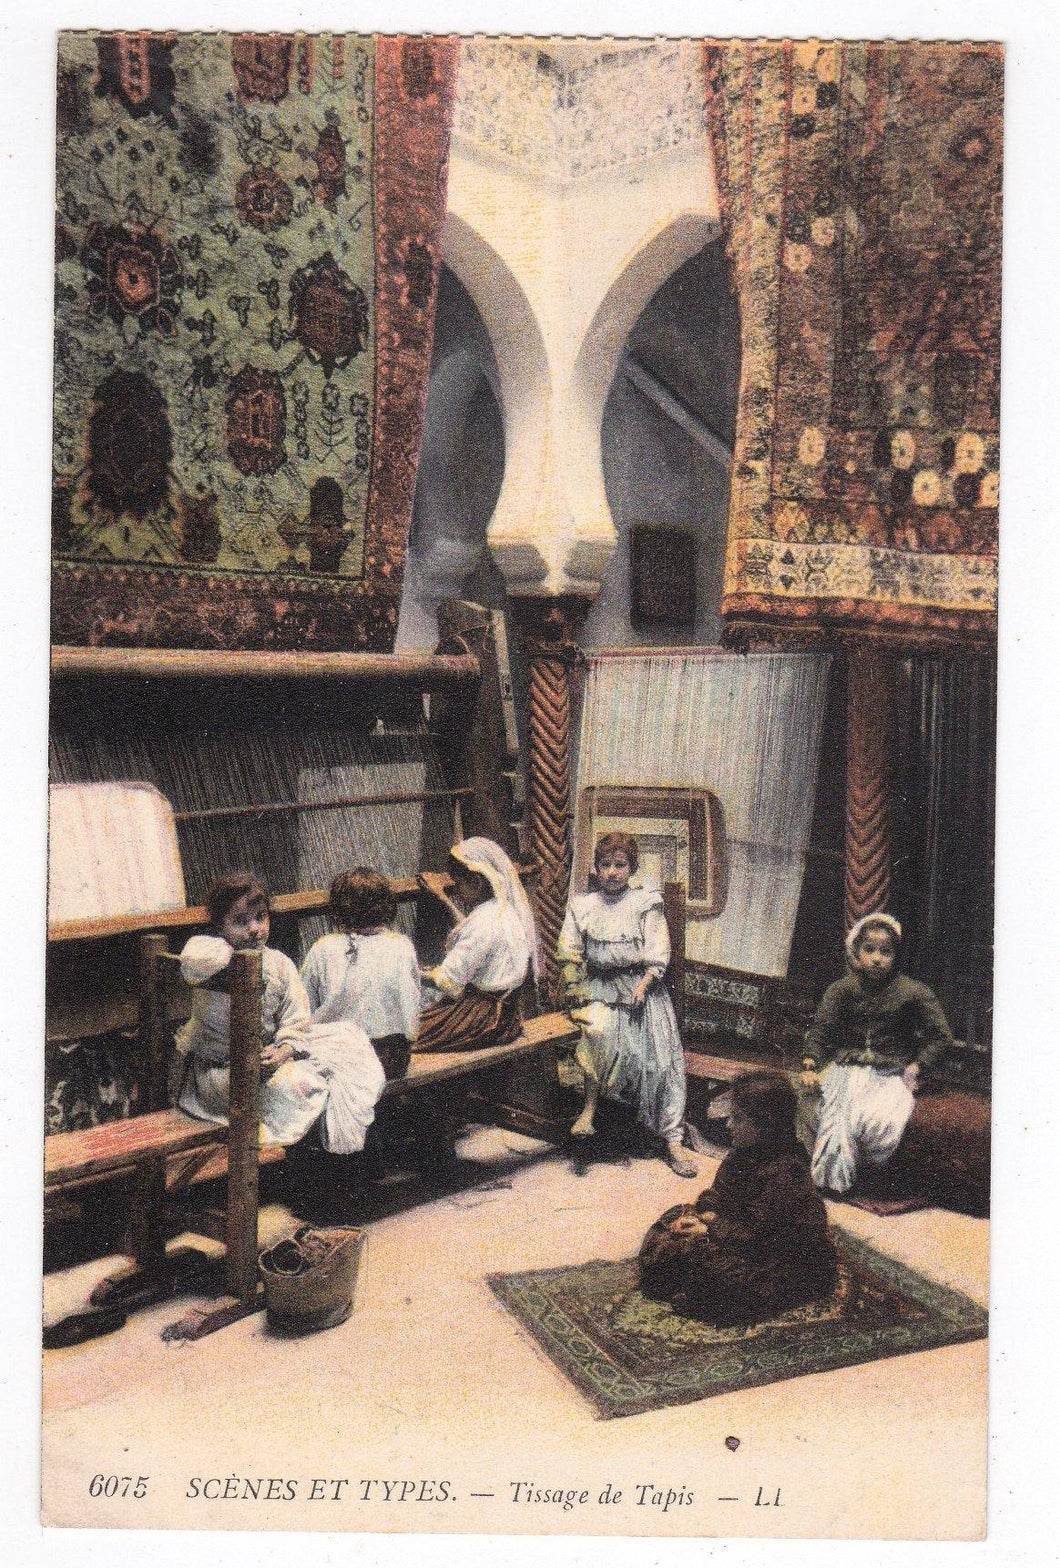 Scenes et Types Tissage de Tapis Carpet Weaving Algeria 1900's - TulipStuff